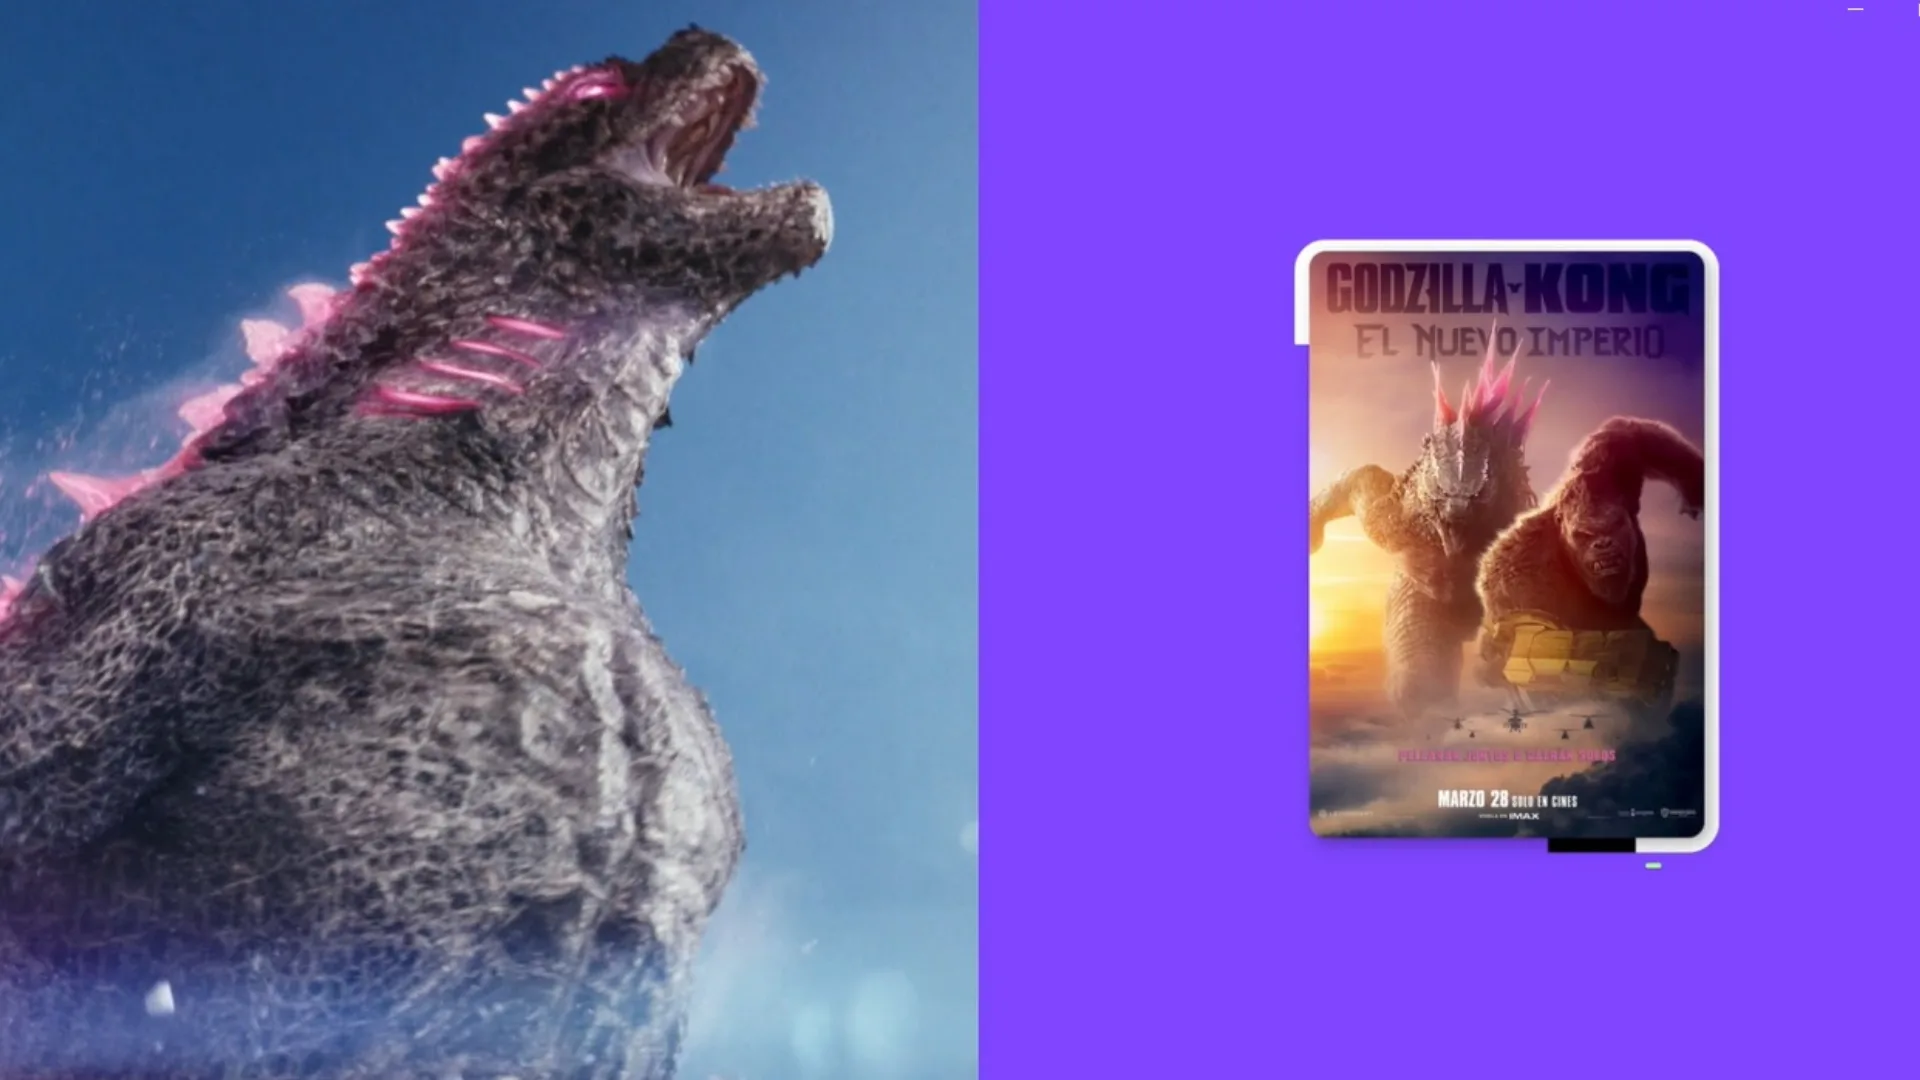 Godzilla y Kong El nuevo imperio estrenos marzo abril 